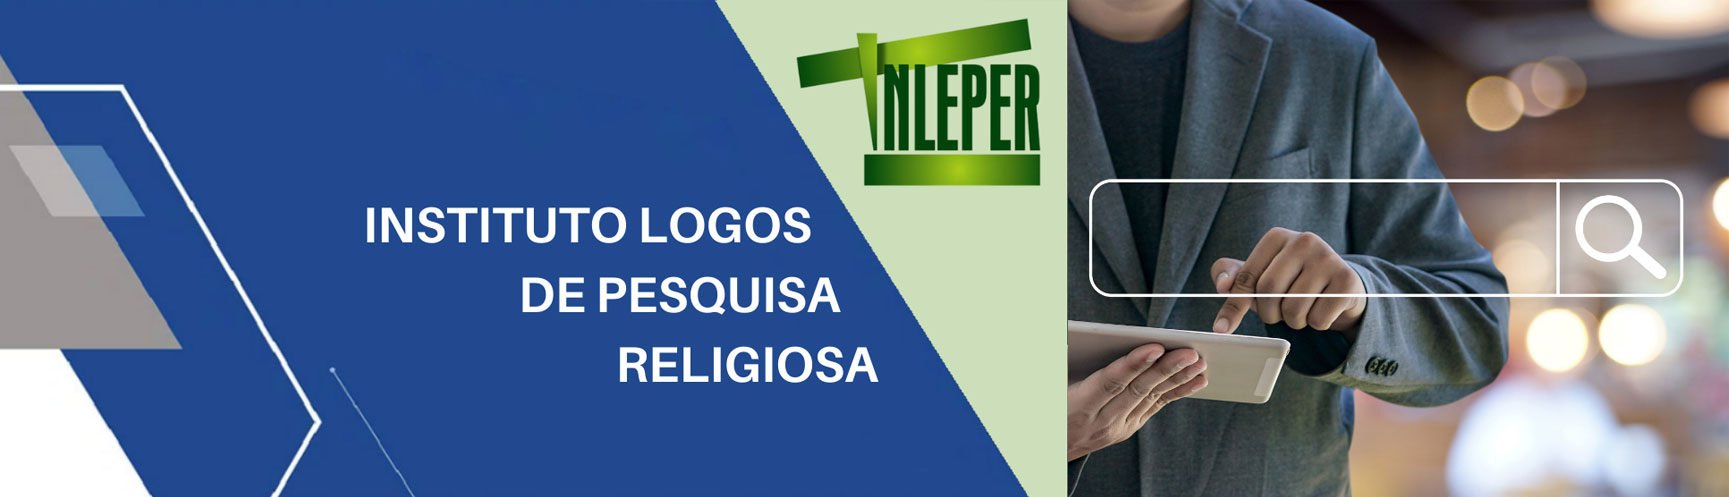 Instituto Logos de pesquisa religiosa